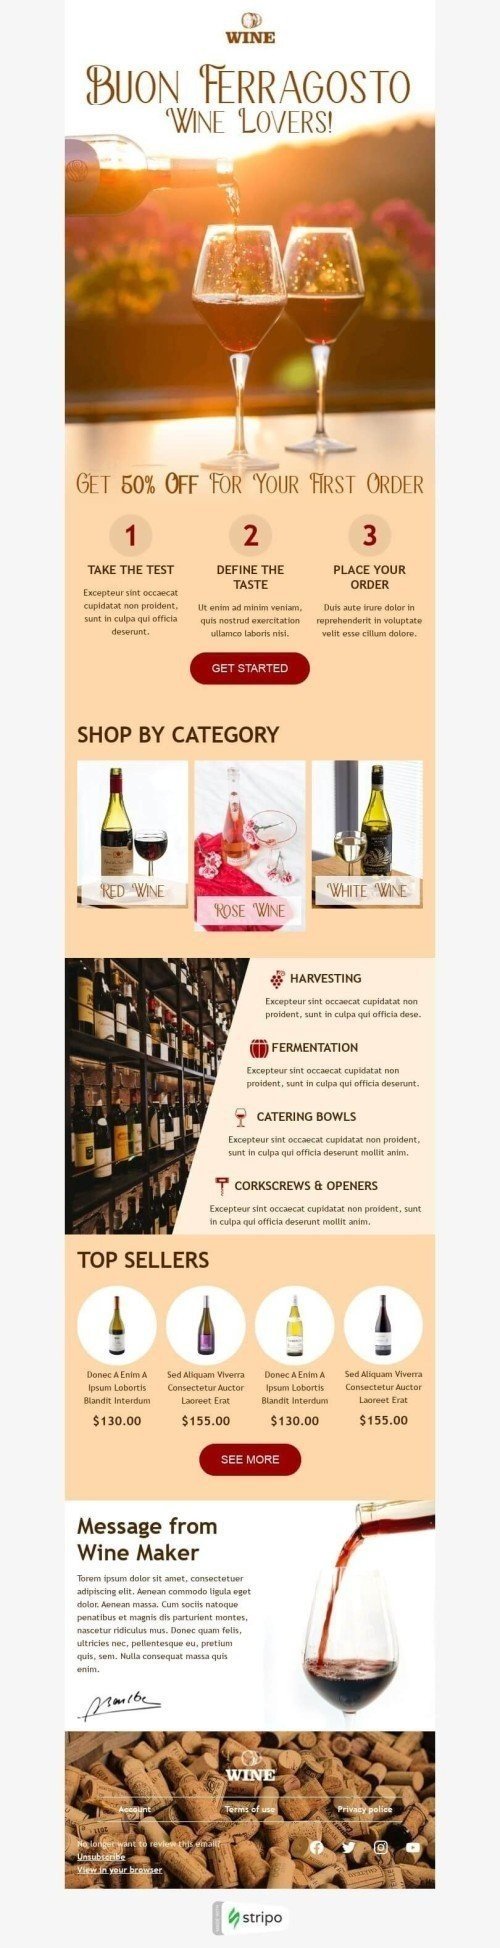 Plantilla de correo electrónico «Mensaje de Wine Maker» de Ferragosto para la industria de Bebidas Vista de escritorio